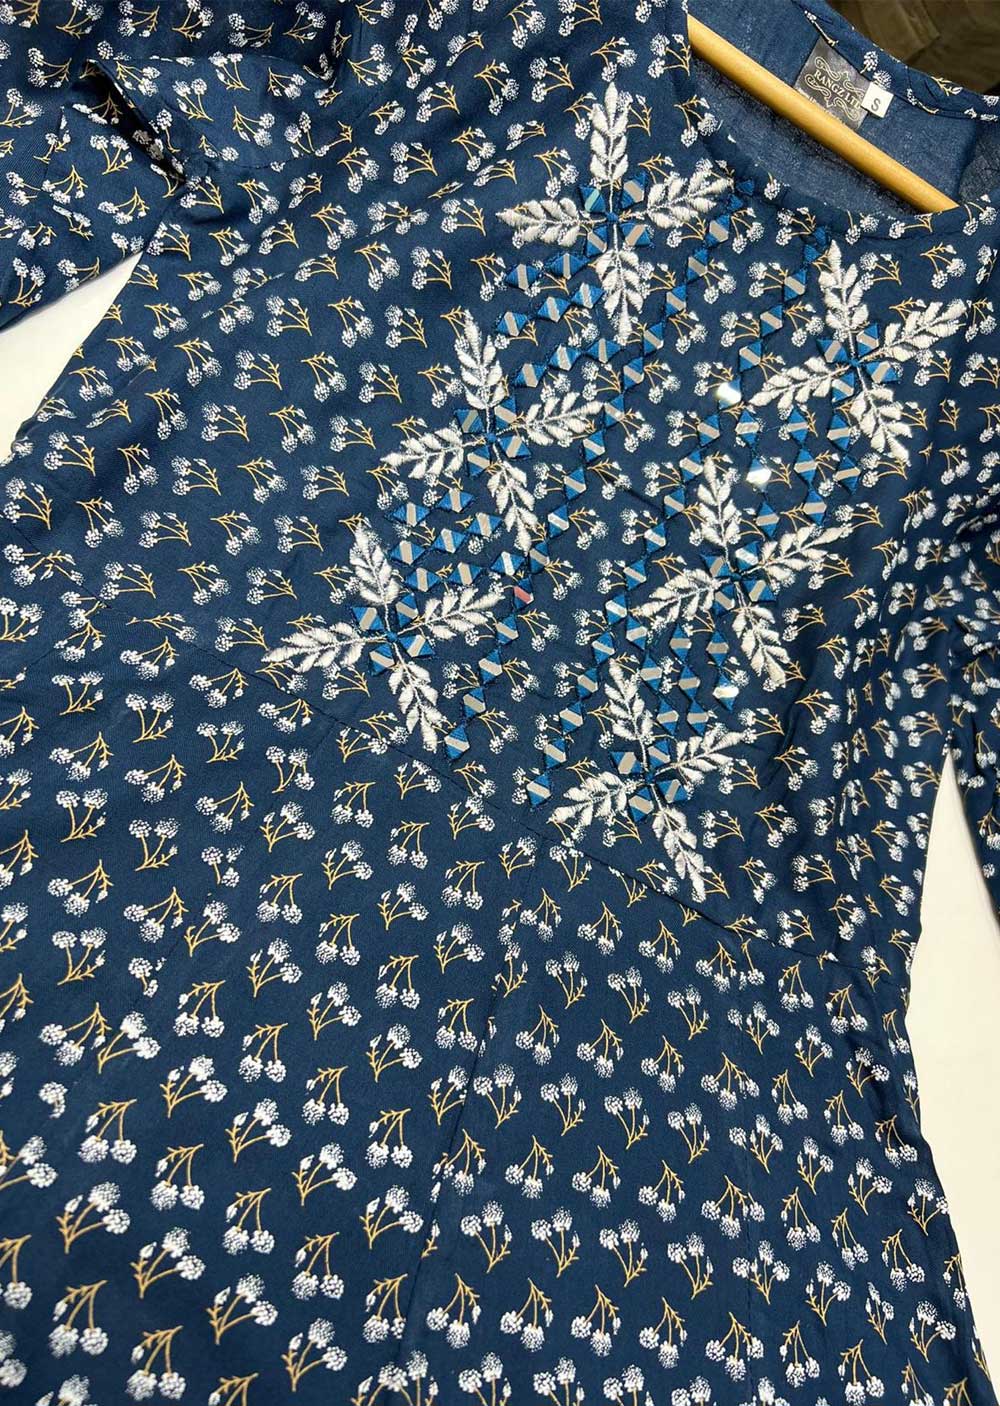 RGZ9903 Teal Printed Linen Dress - Memsaab Online